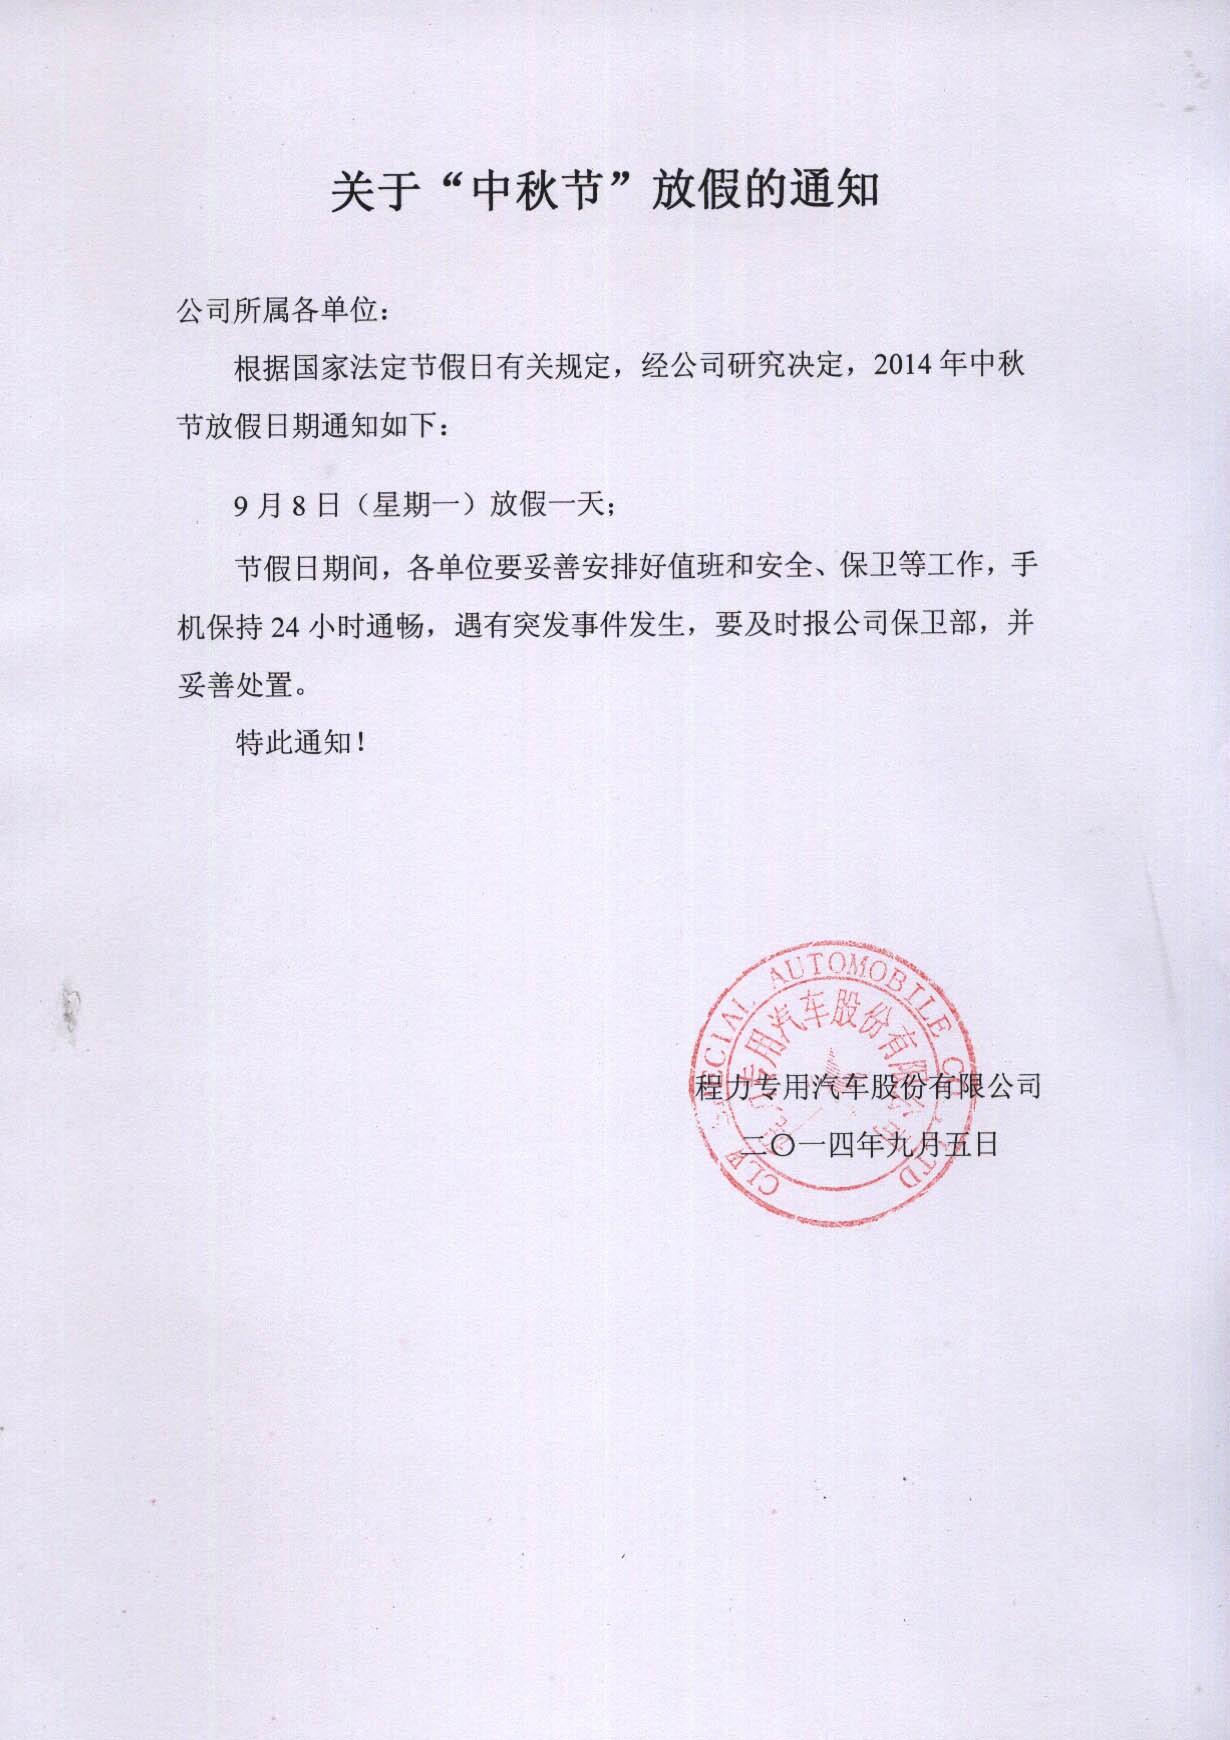 湖北程力关于2014年中秋节放假工作安排的通知